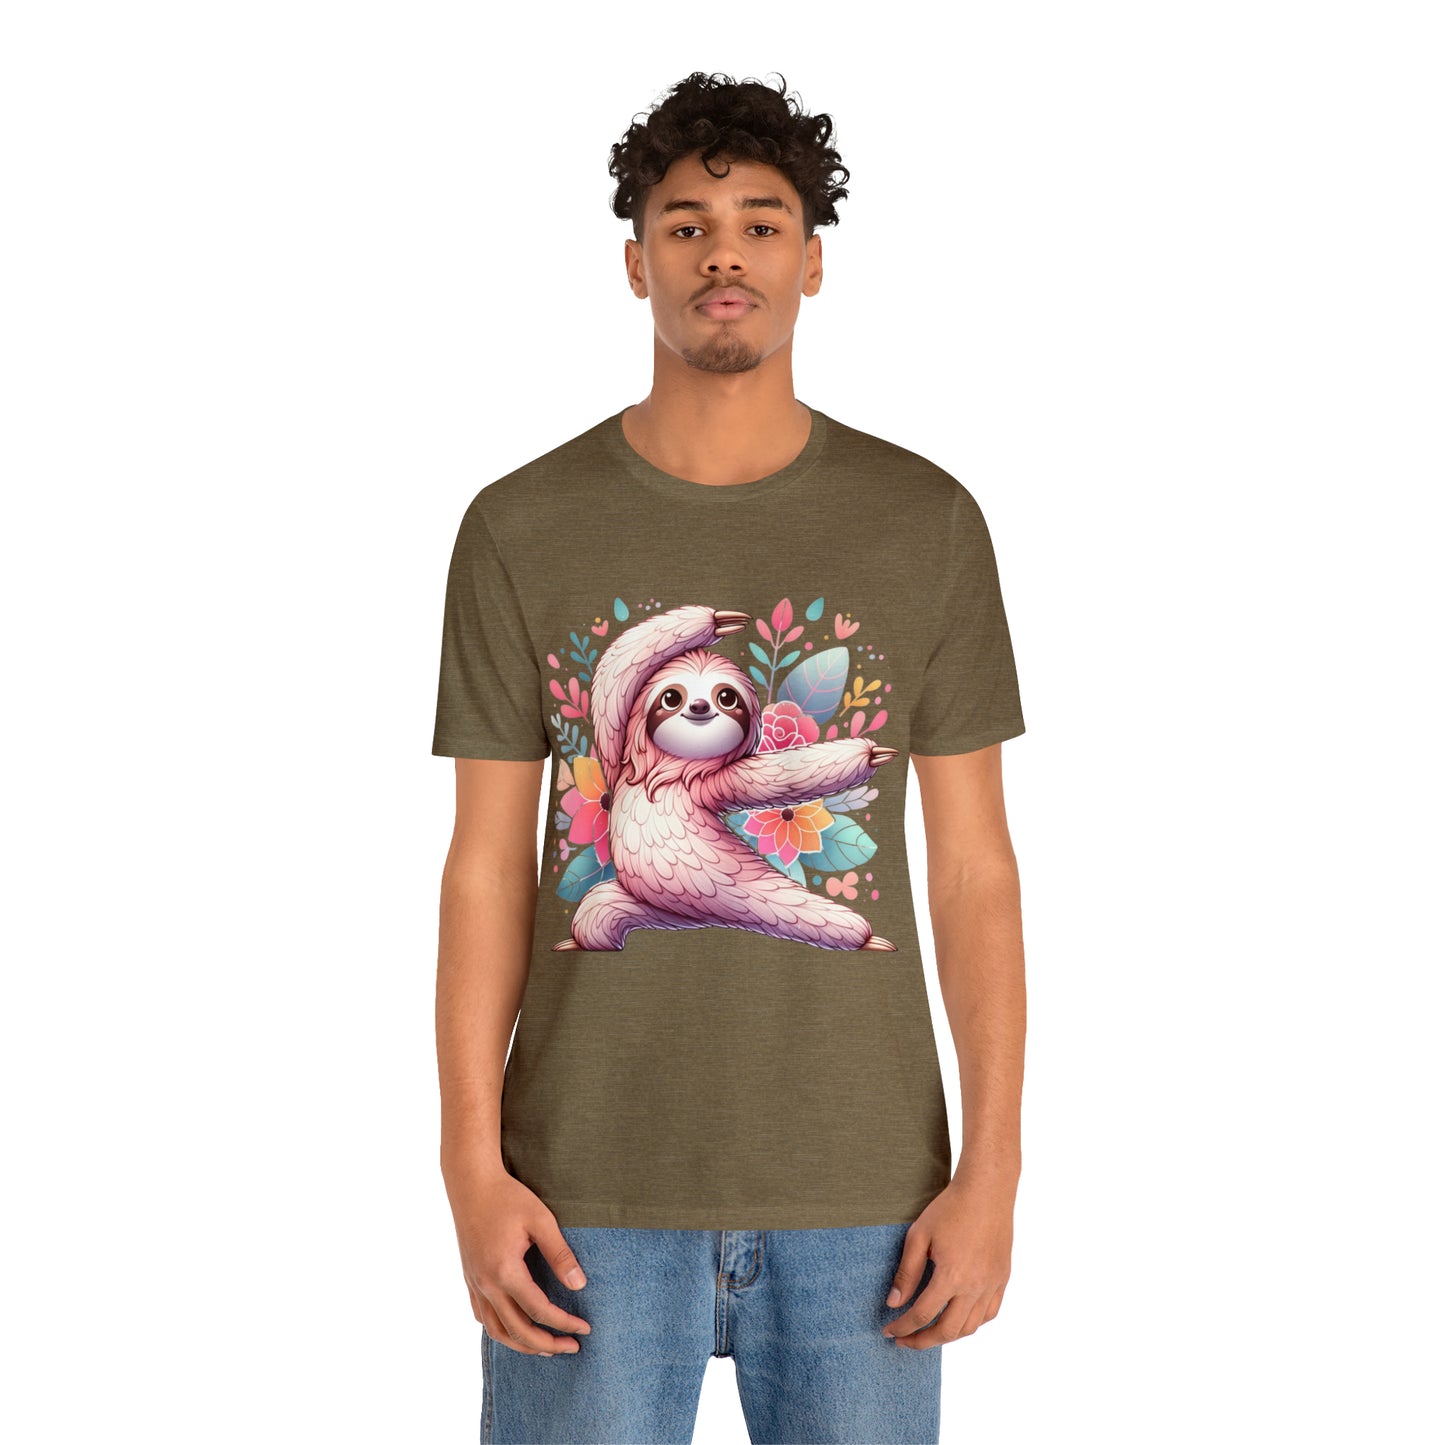 Sloth Yoga T-Shirt, Sloth TShirt, Yoga Shirt, Sloth Lover Gifts,